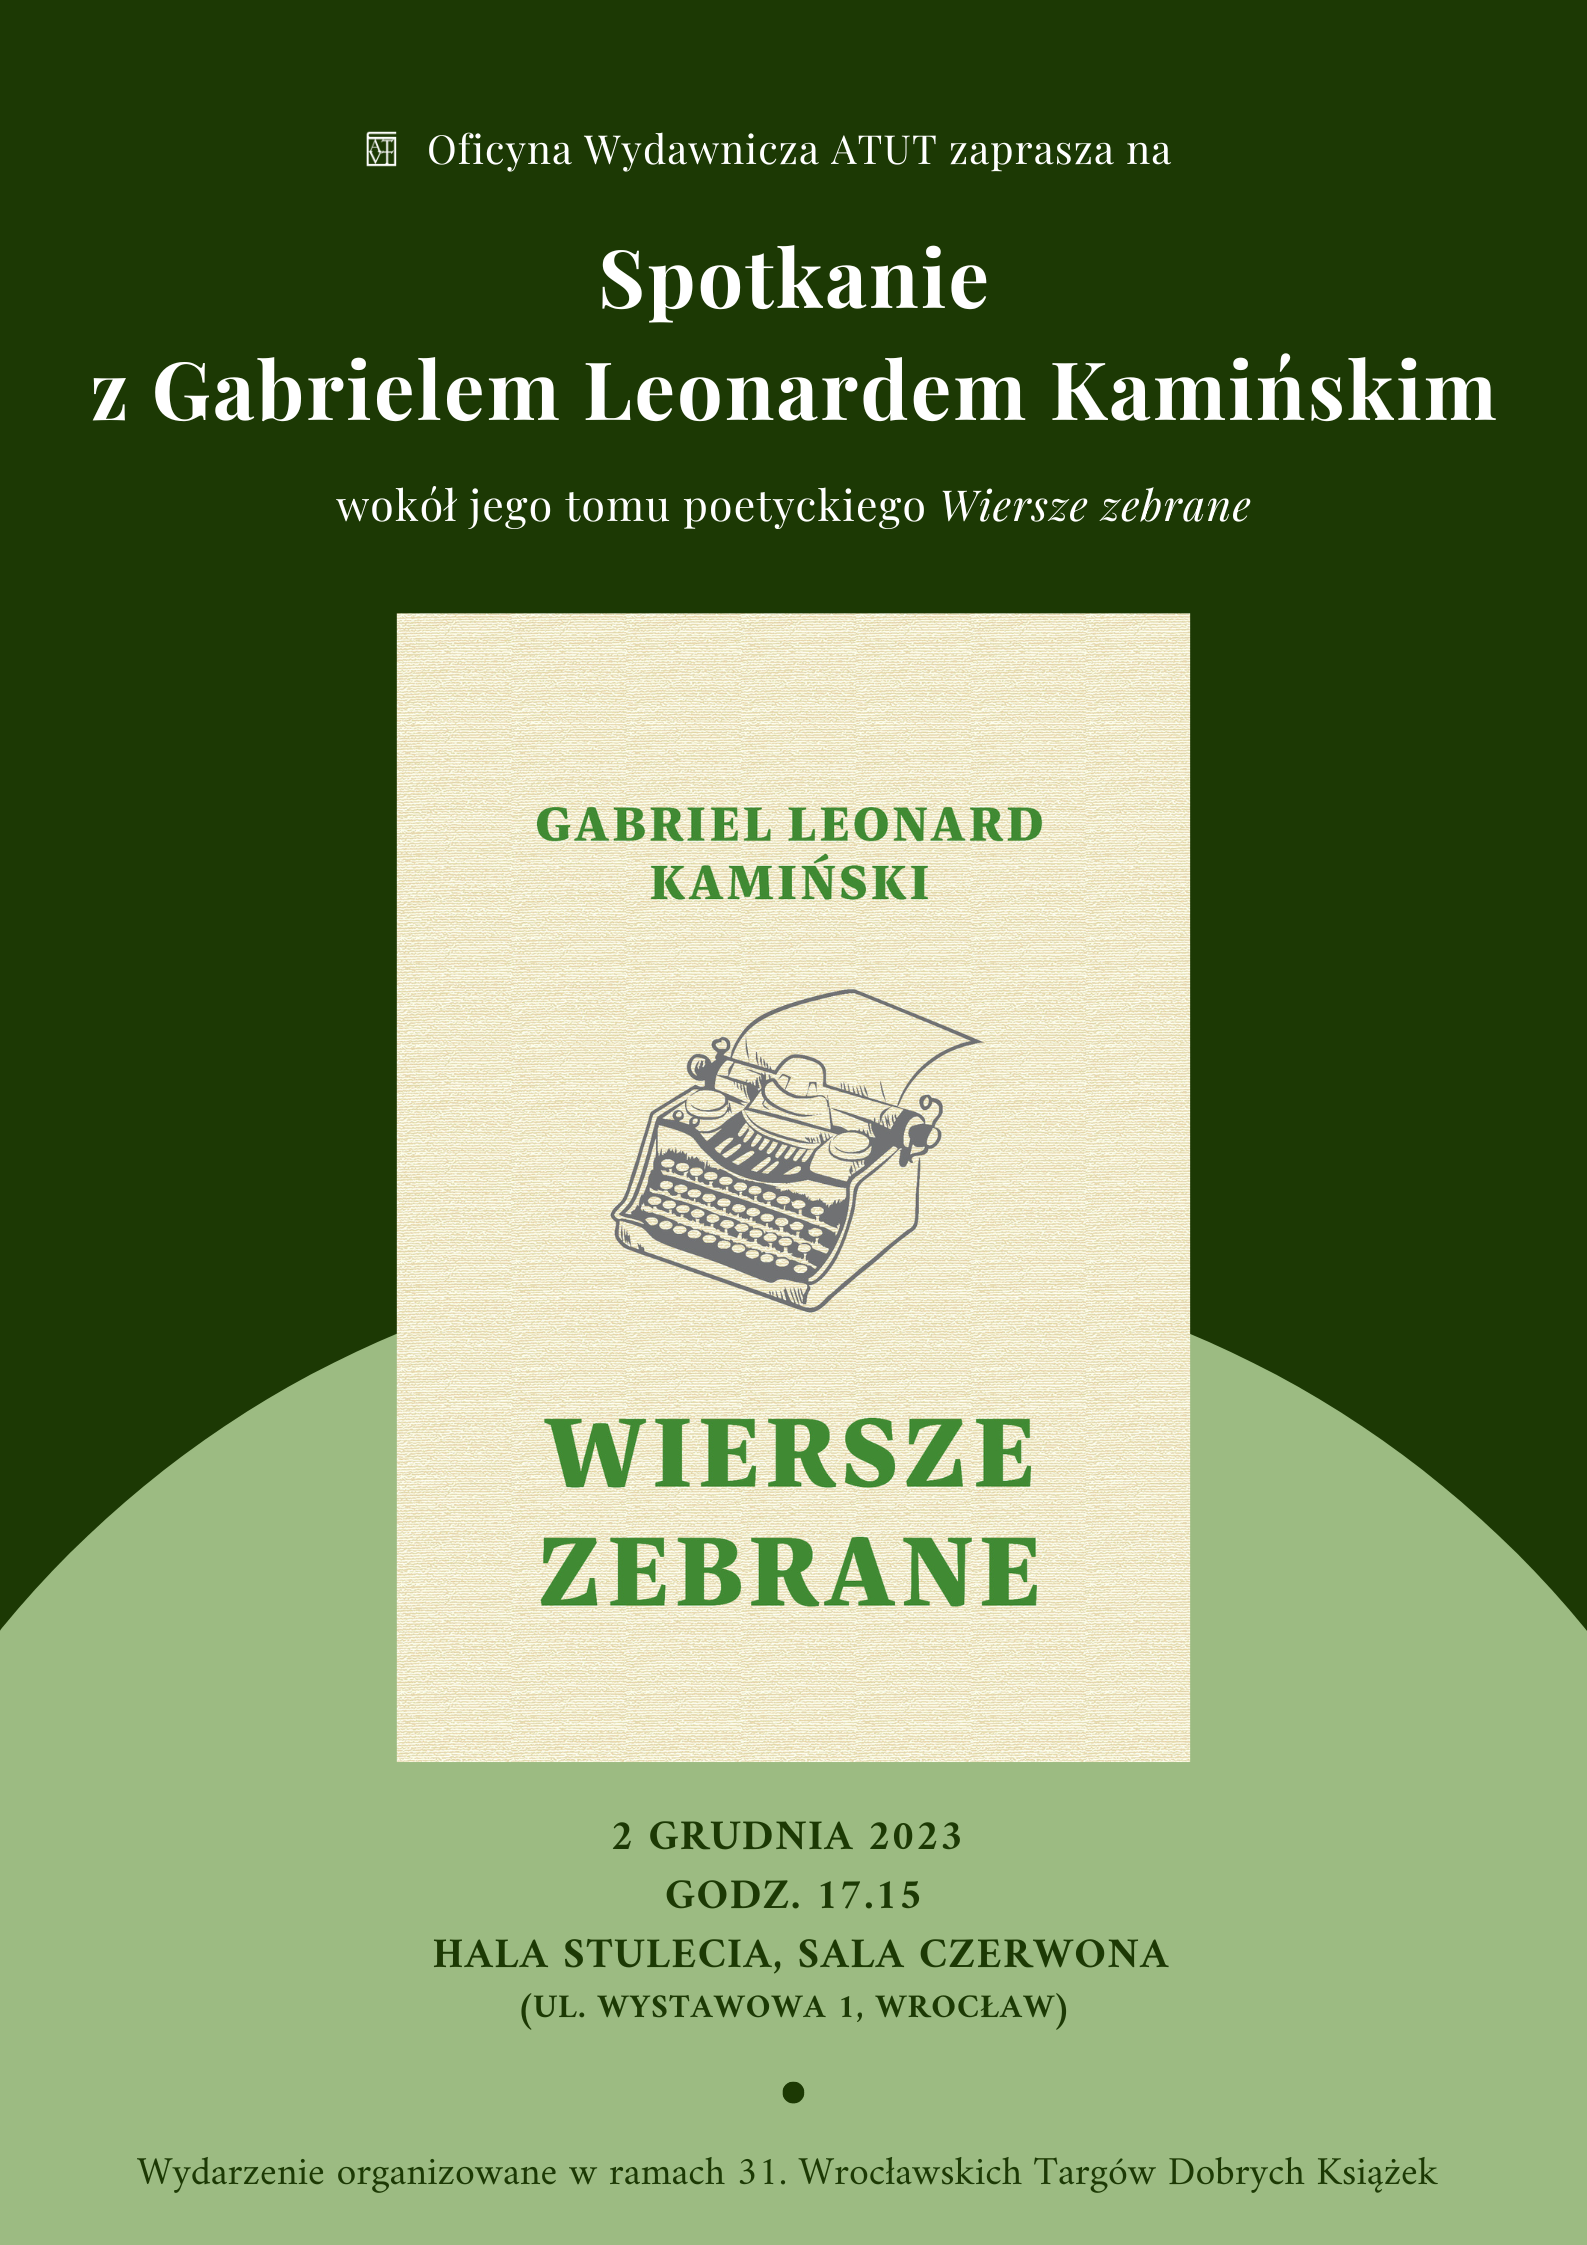 Spotkanie  na 31. WTDK promujące "Wiersze zebrane" Gabriela Leonarda Kamińskiego 